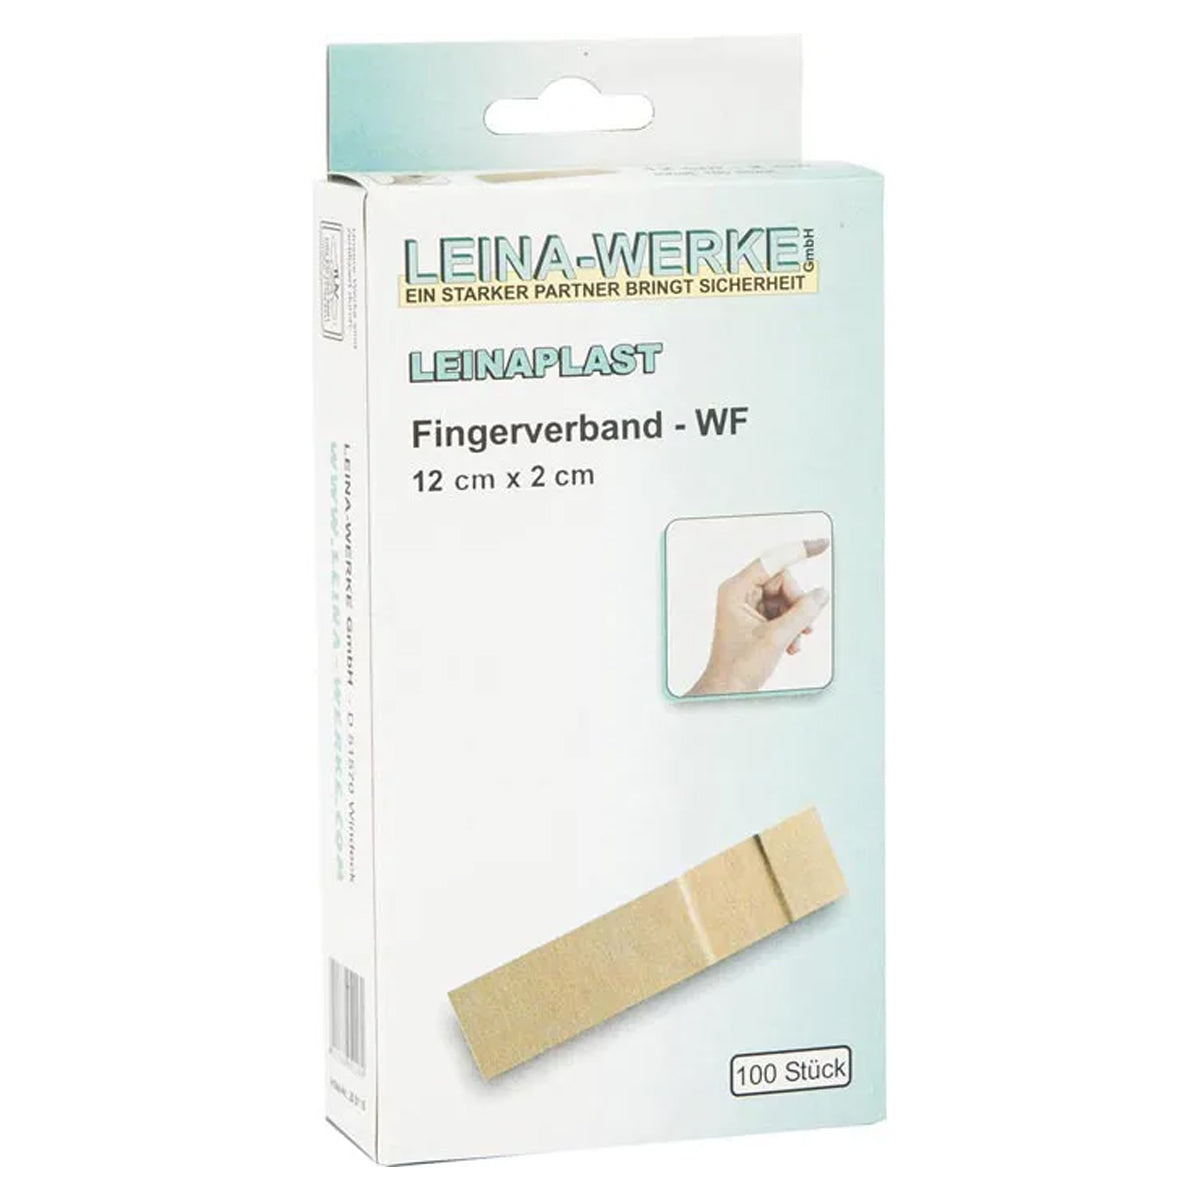 Leina Werke Fingerverband Pflaster elastisch 100er Pack